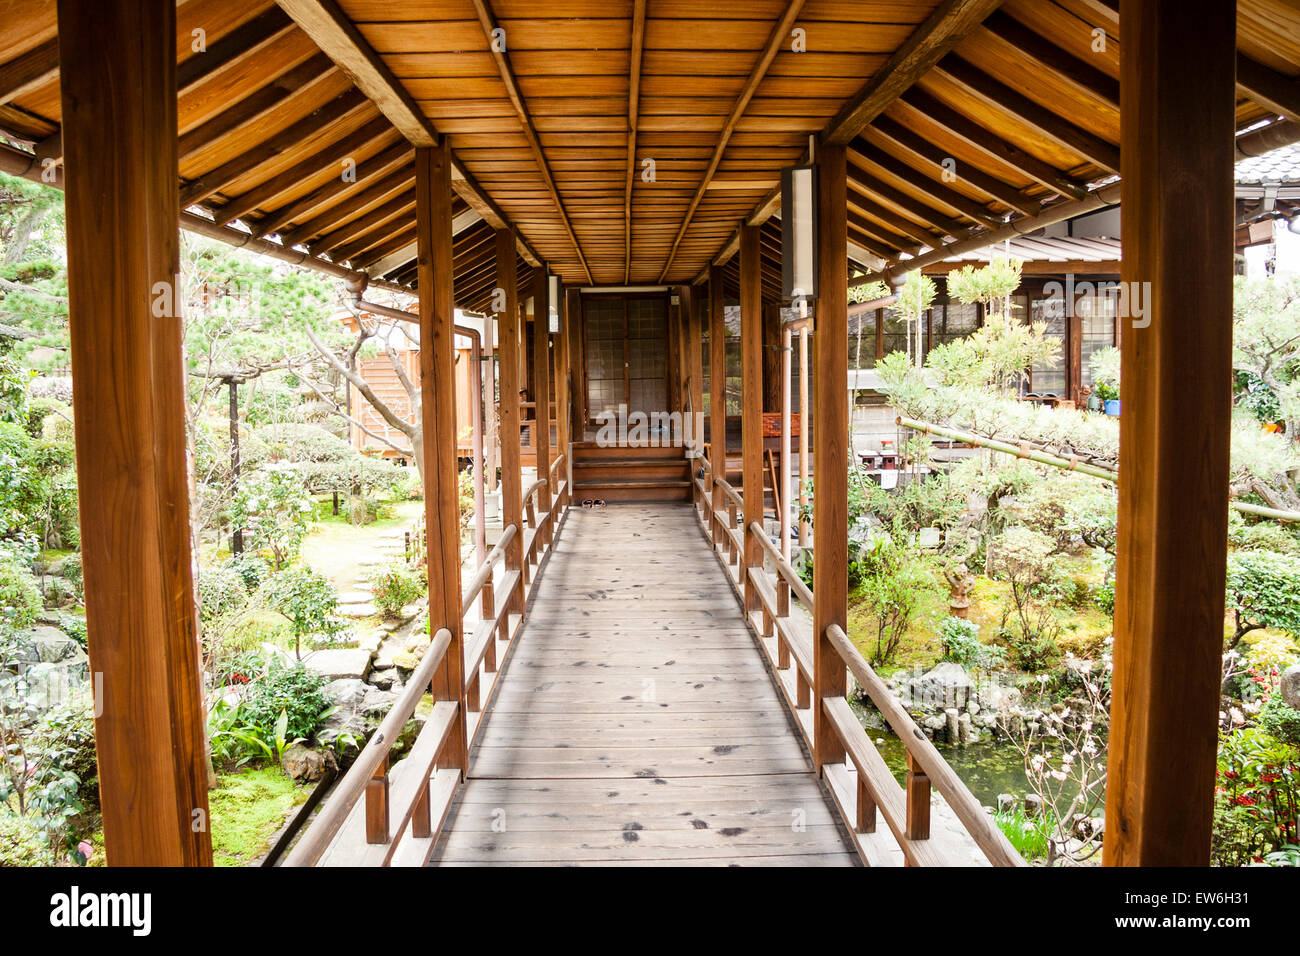 Corridoio aperto coperto in legno sollevato al Tempio di Yogon-in che attraversa il giardino giapponese, che collega la sala buddista con i quartieri di vita del monaco. Foto Stock